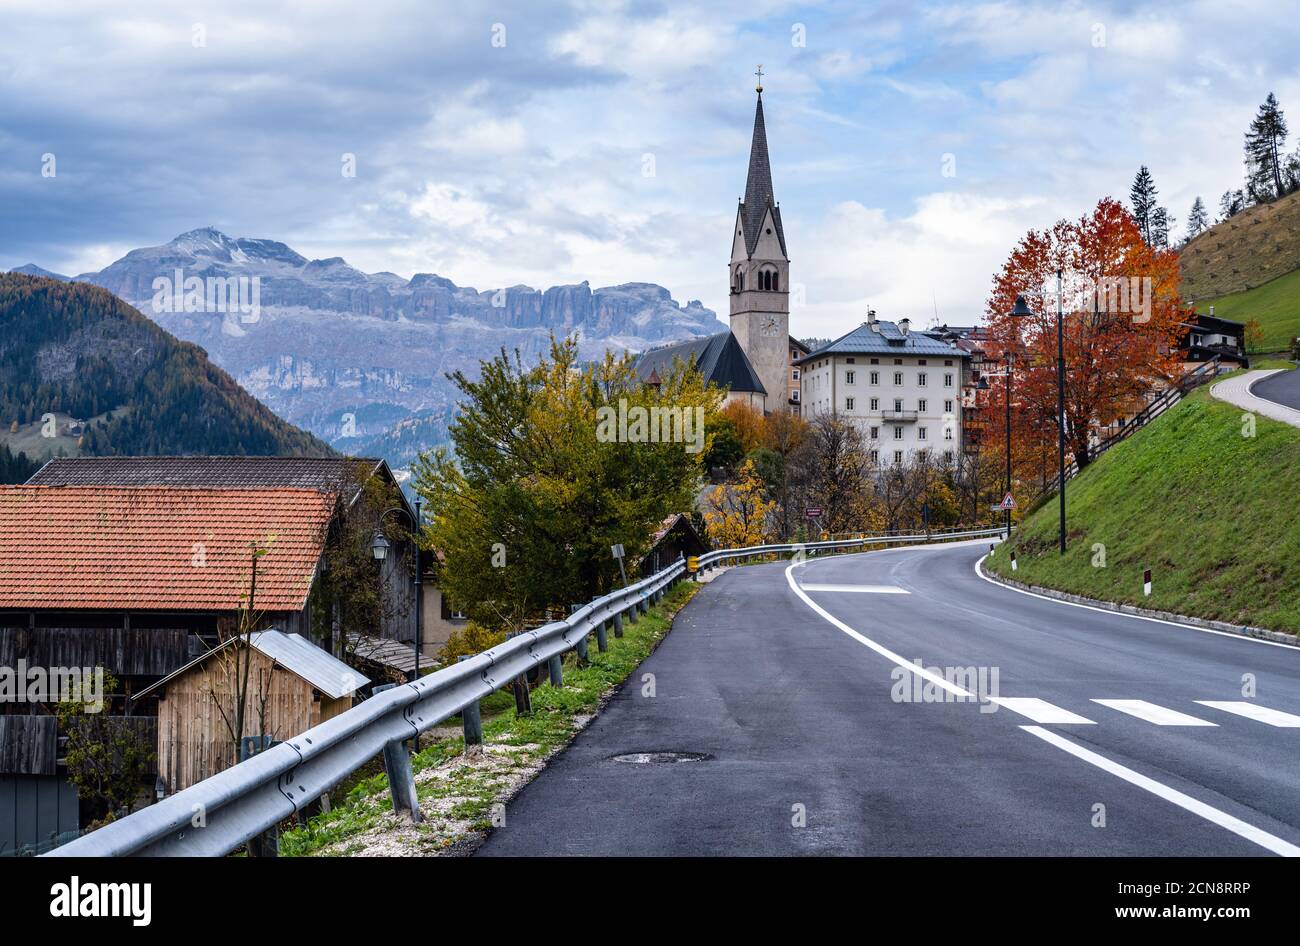 Autumn Dolomites village and old church, Livinallongo del Col di Lana, Italy. Stock Photo